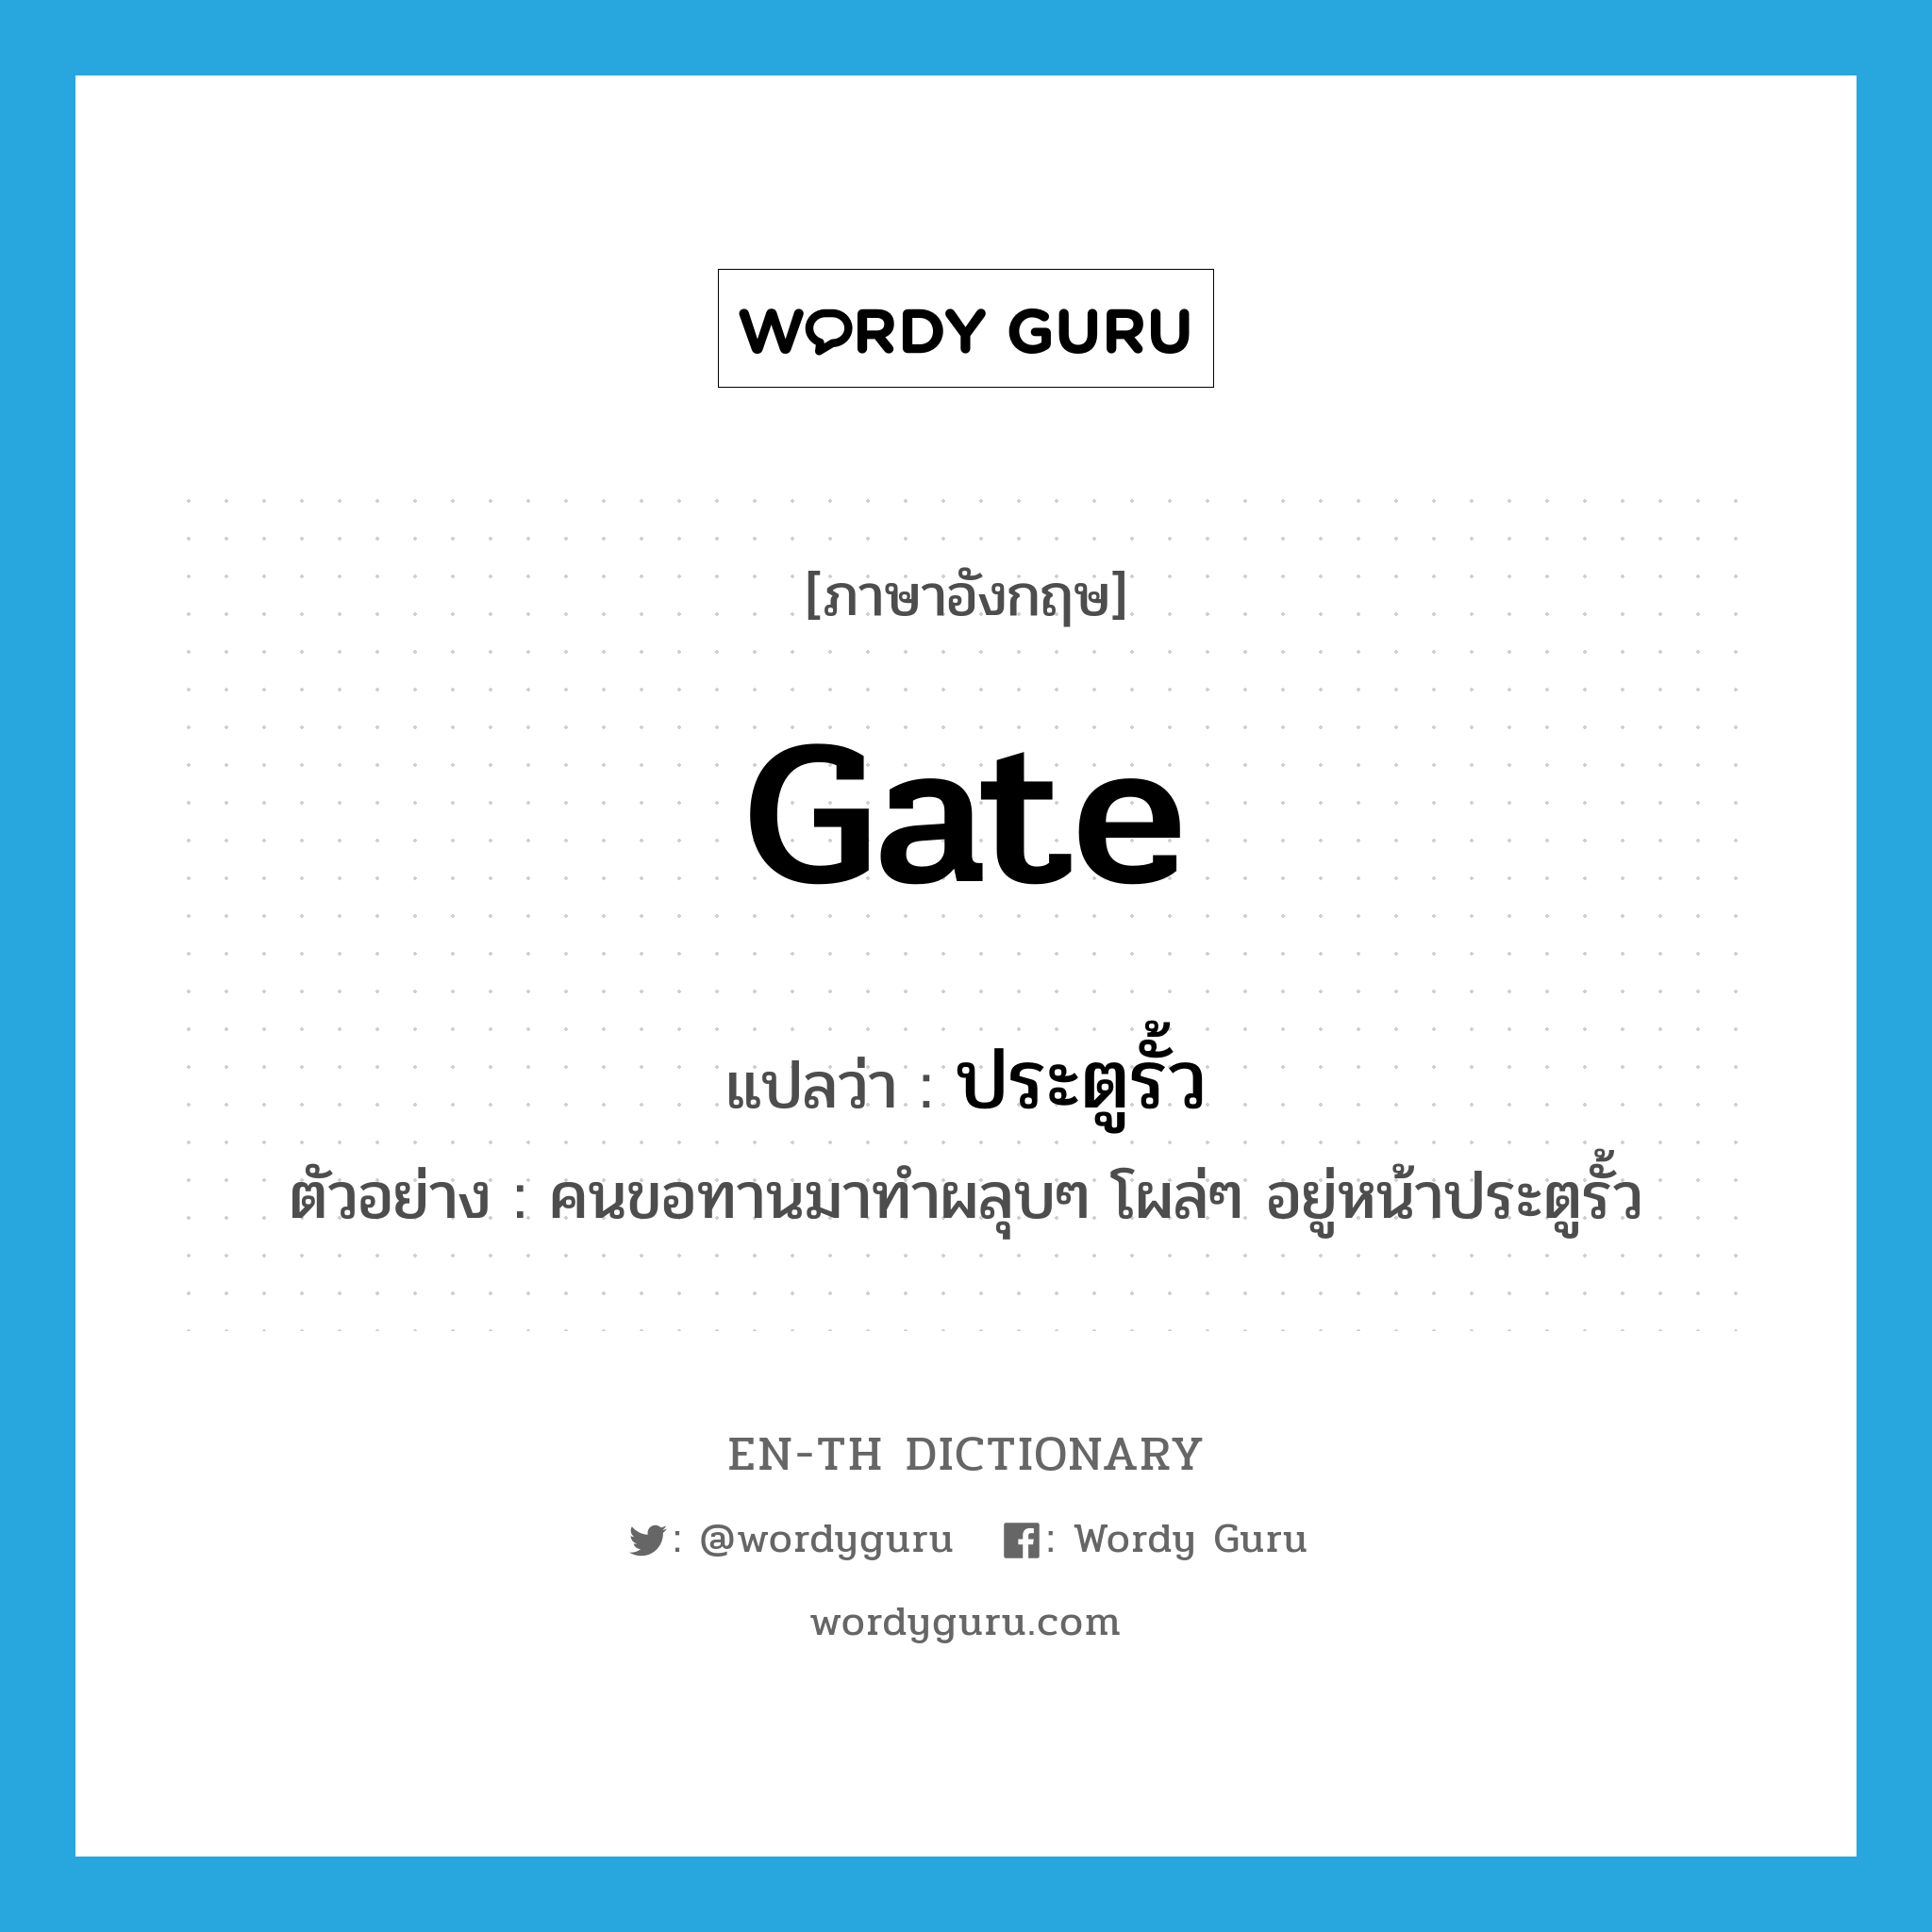 gate แปลว่า?, คำศัพท์ภาษาอังกฤษ gate แปลว่า ประตูรั้ว ประเภท N ตัวอย่าง คนขอทานมาทำผลุบๆ โผล่ๆ อยู่หน้าประตูรั้ว หมวด N